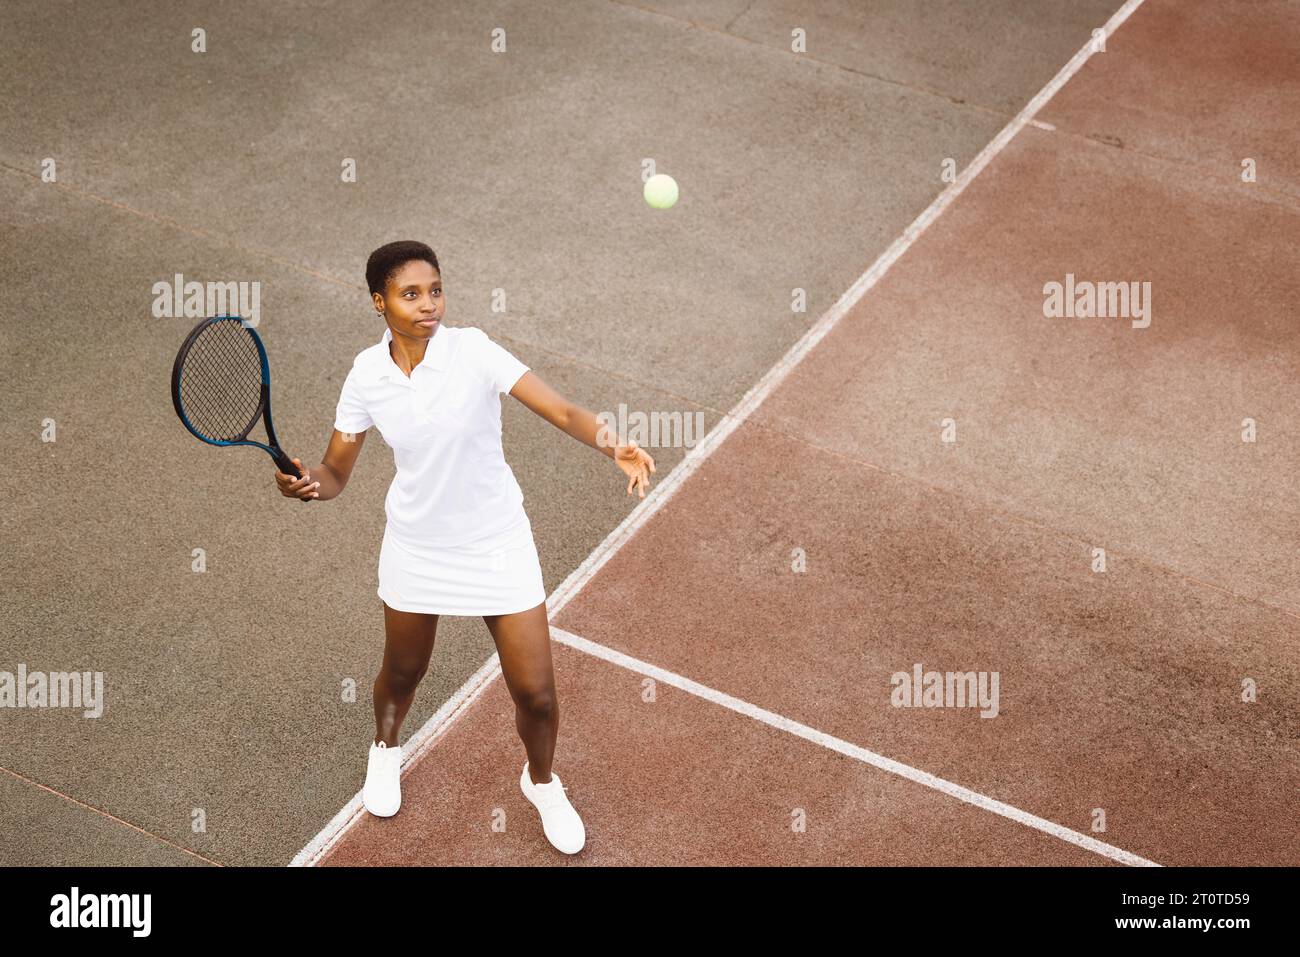 Jeune belle femme jouant un match de tennis. Femme de sport frappant un service sur un court de tennis extérieur. Banque D'Images